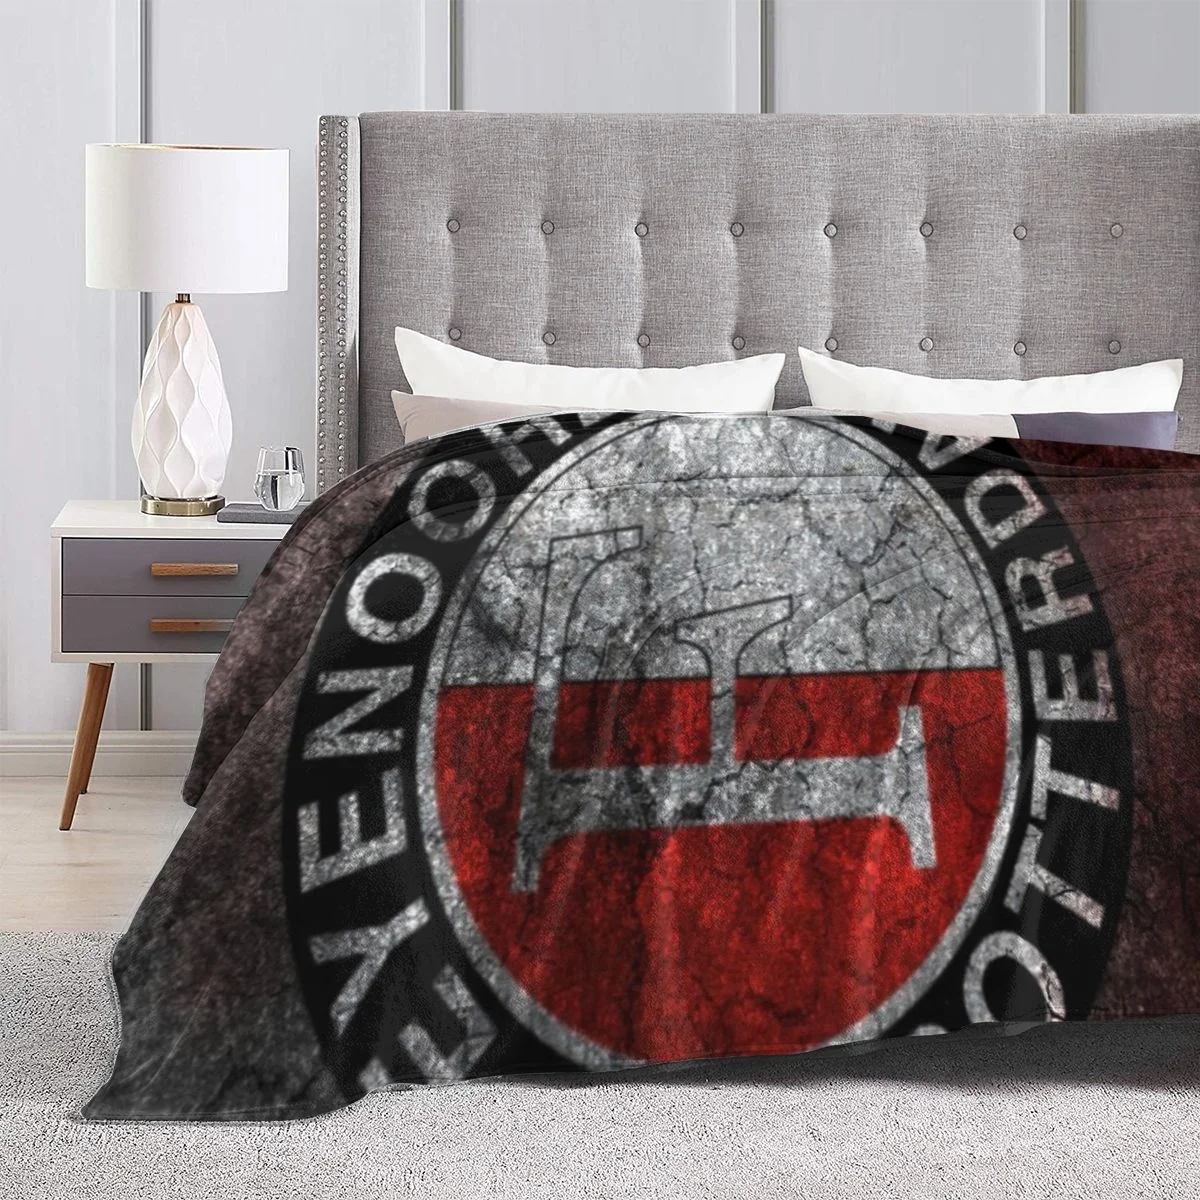 3D Feyenoord Rotterdam Blanket Warm Super Soft Flannel Nap Bedspread Bedding Plush Quilt Plaids|Blankets| - AliExpress